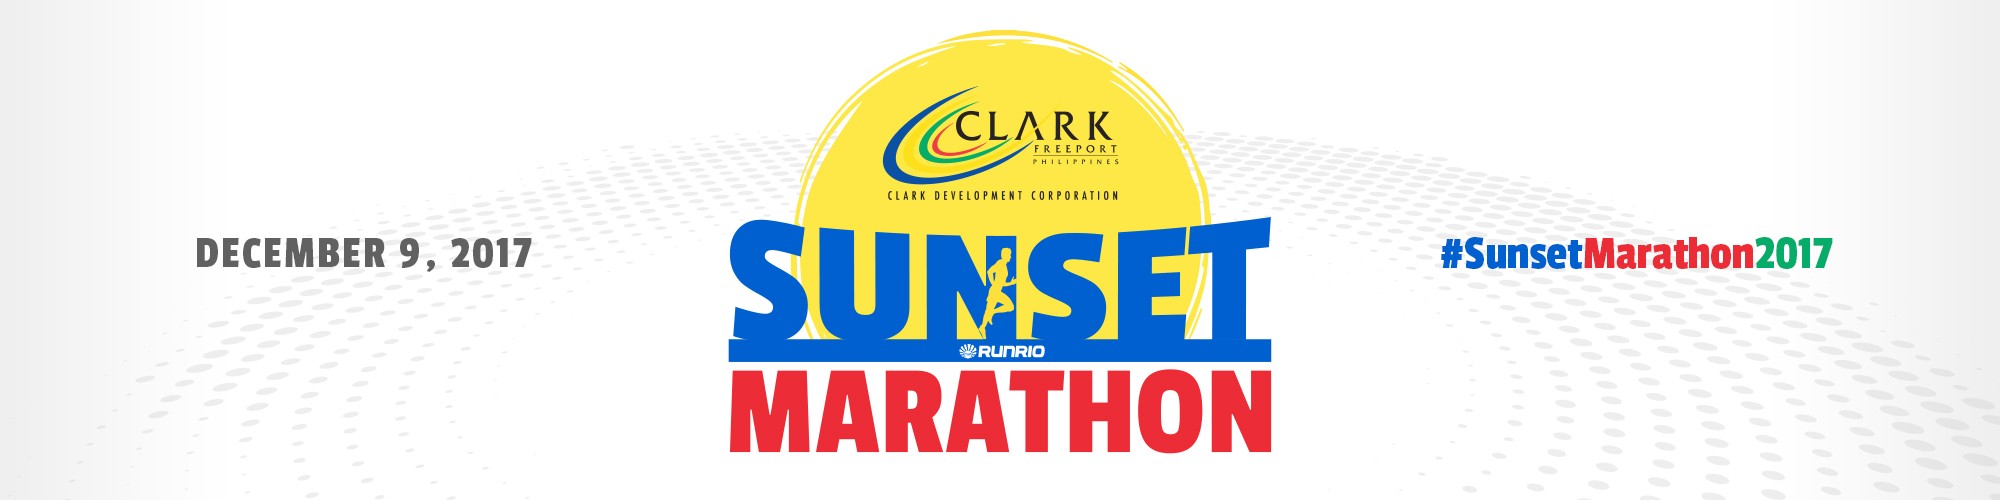 Clark Sunset Marathon